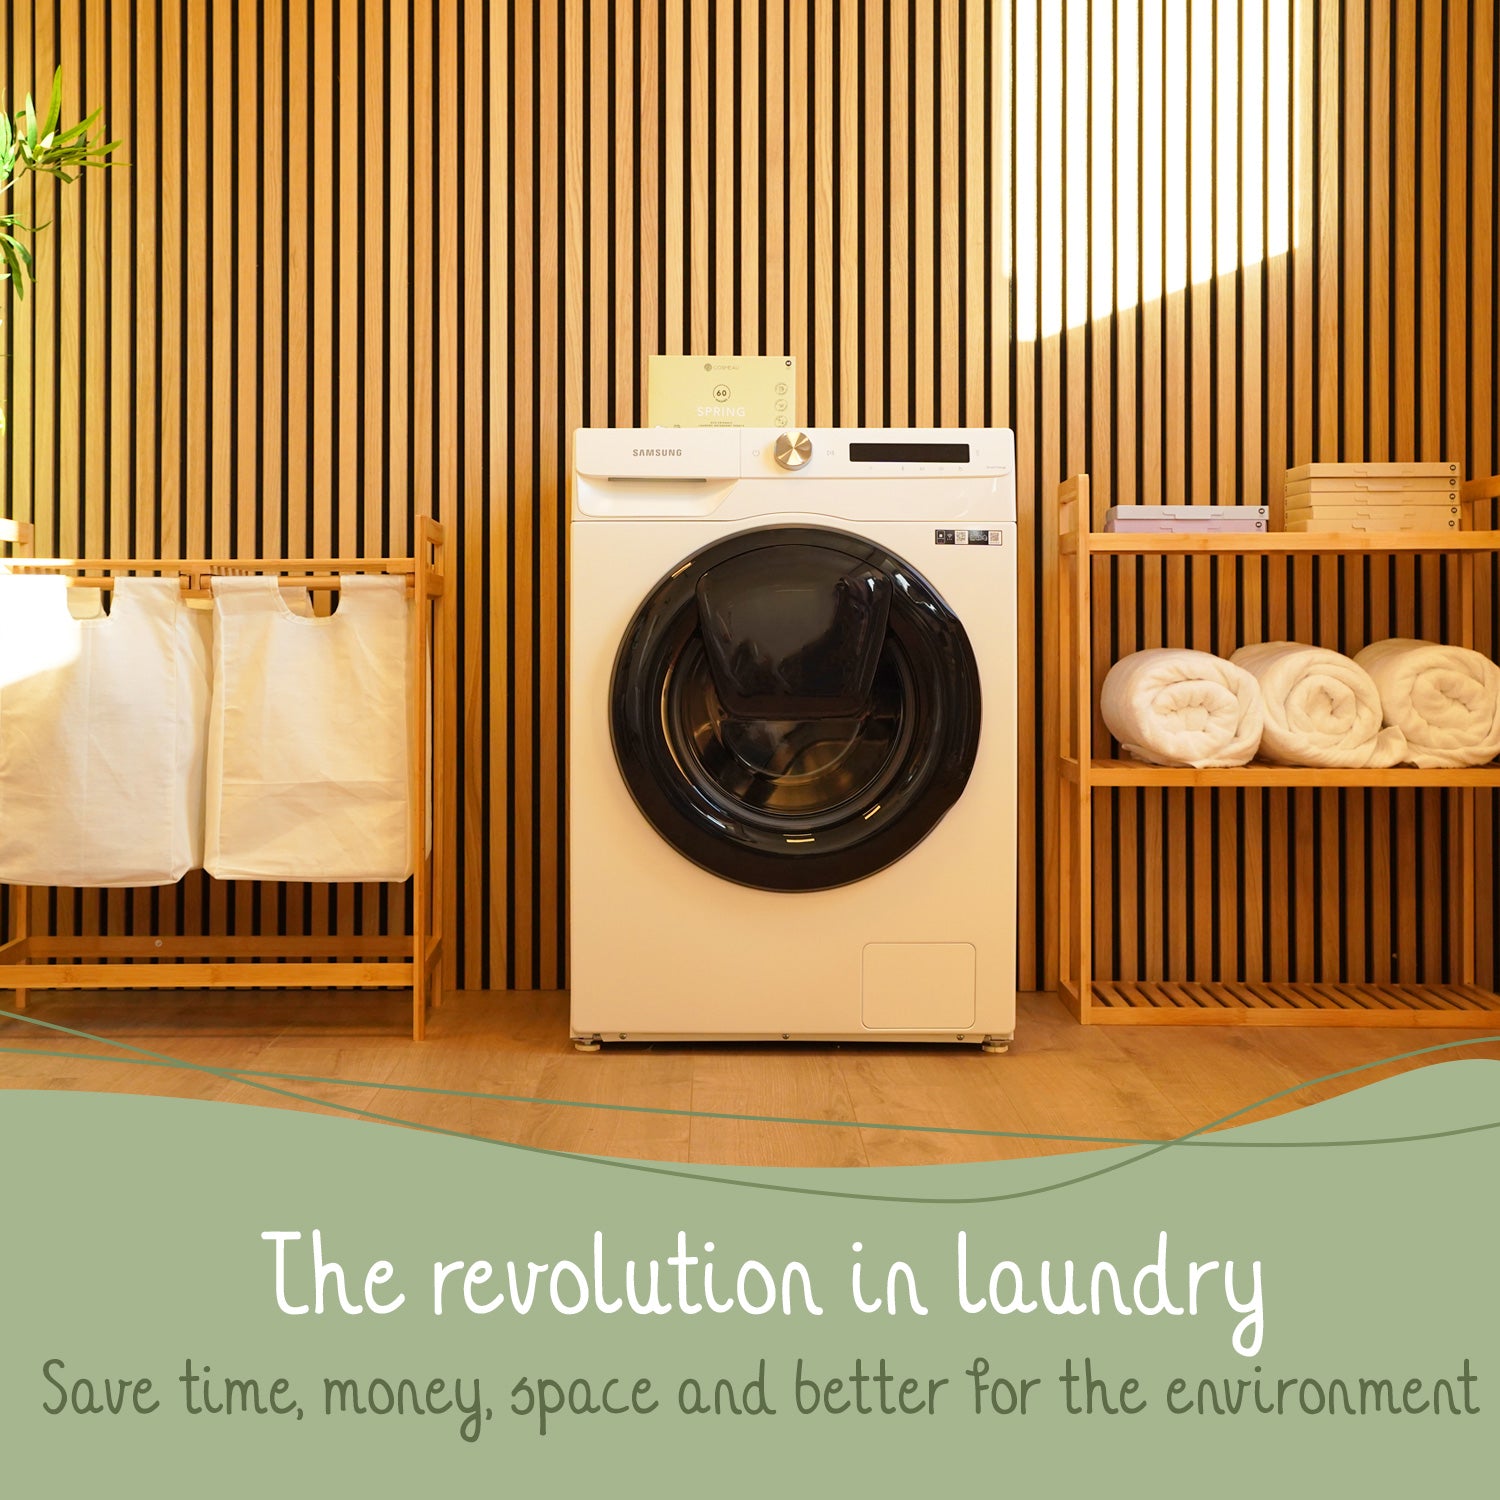 OEM Free Sample Bulk Eco Friendly Soap Washing Fragrance Laundry